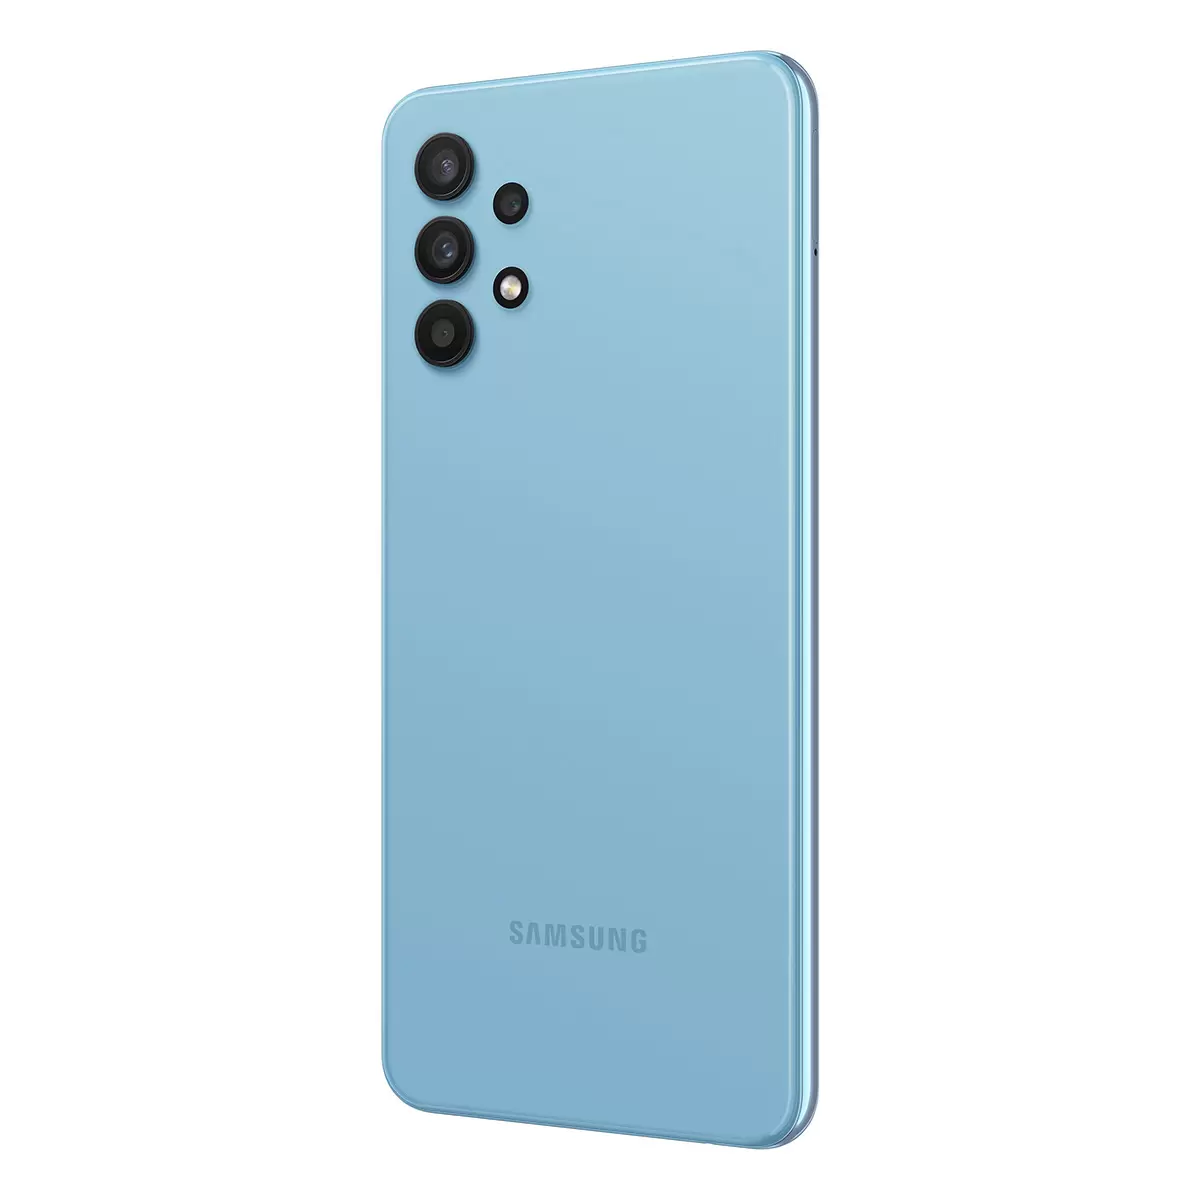 Samsung Galaxy A32 Color: Azul 128 GB